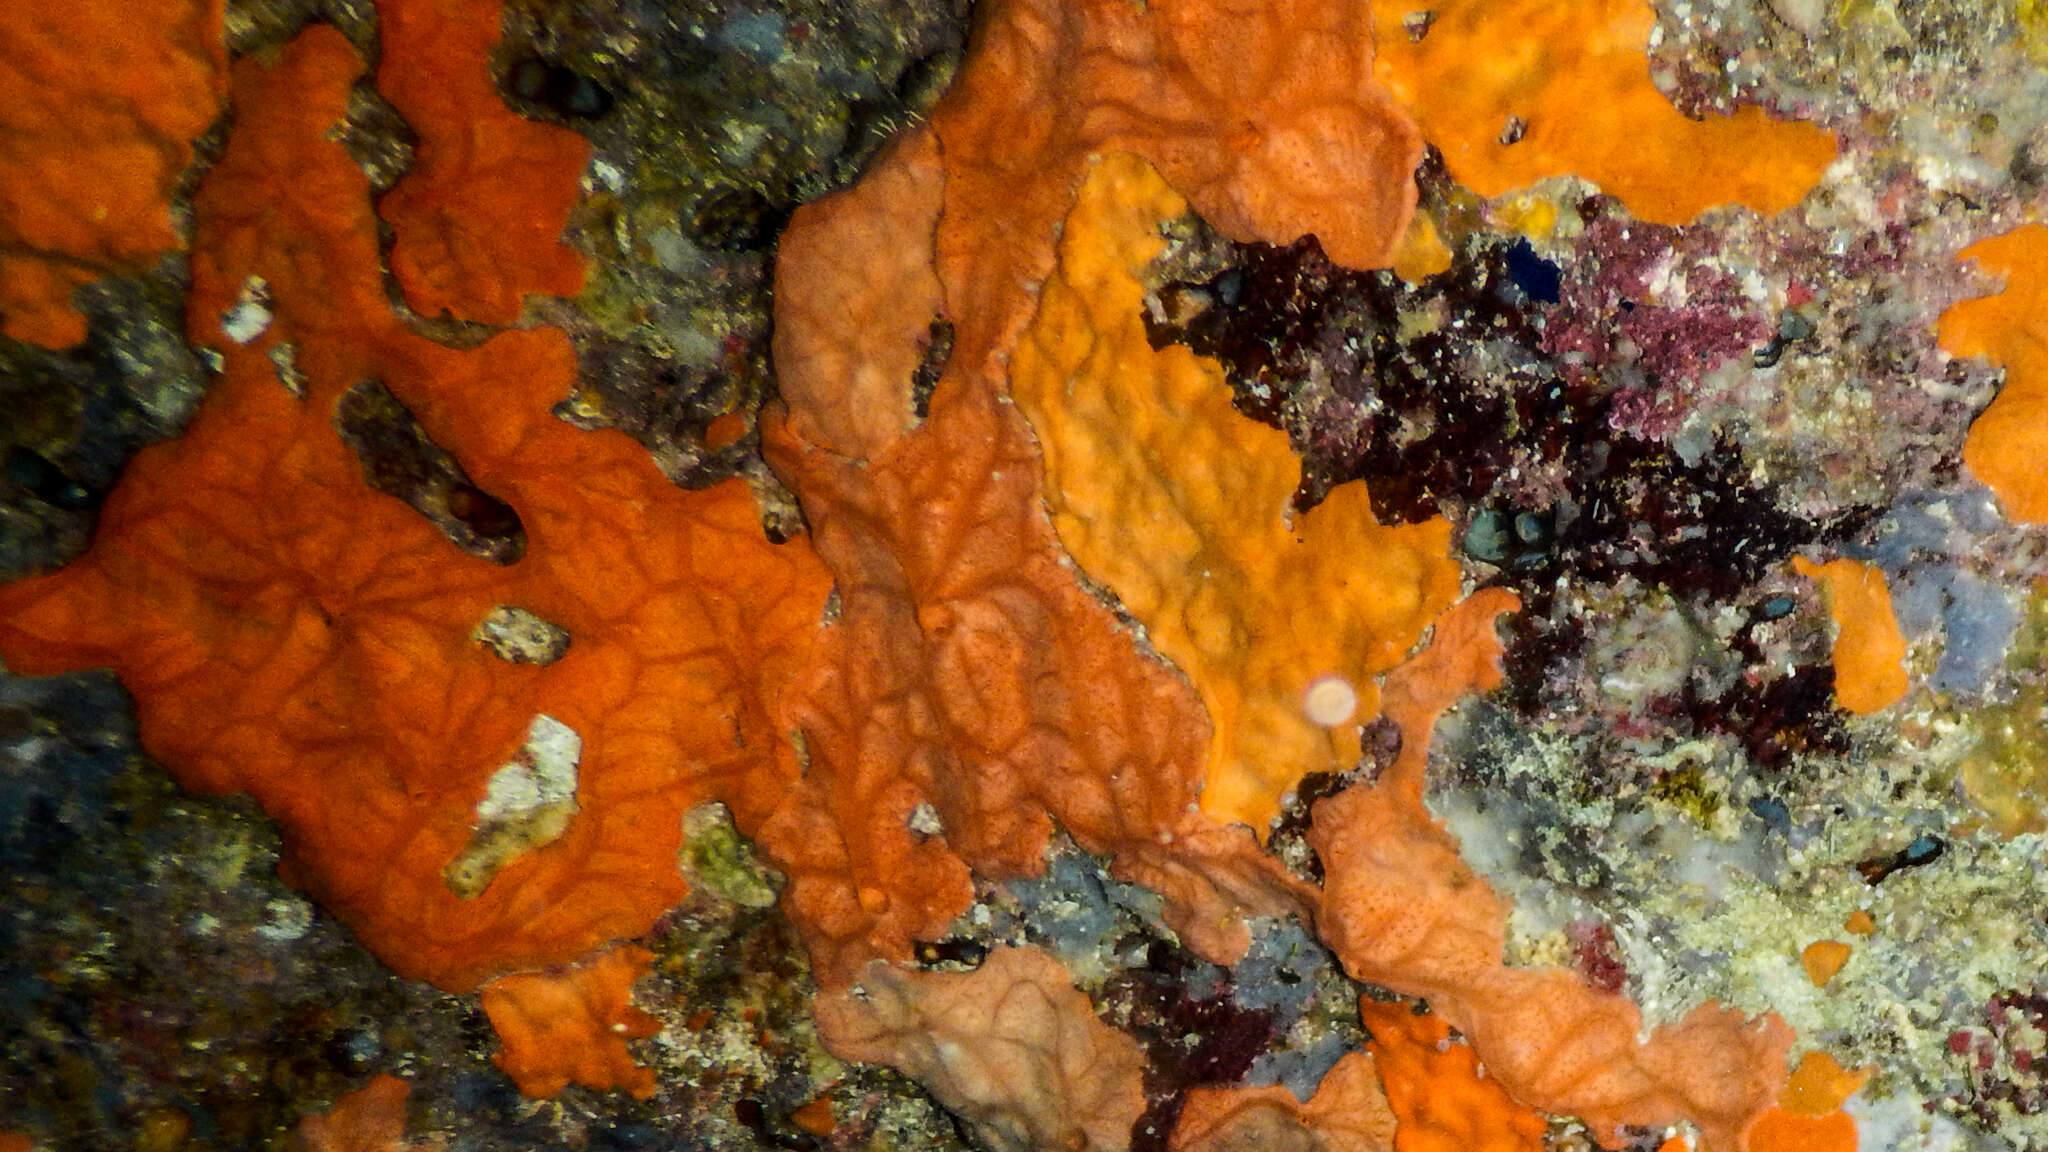 Image of encrusting orange sponge